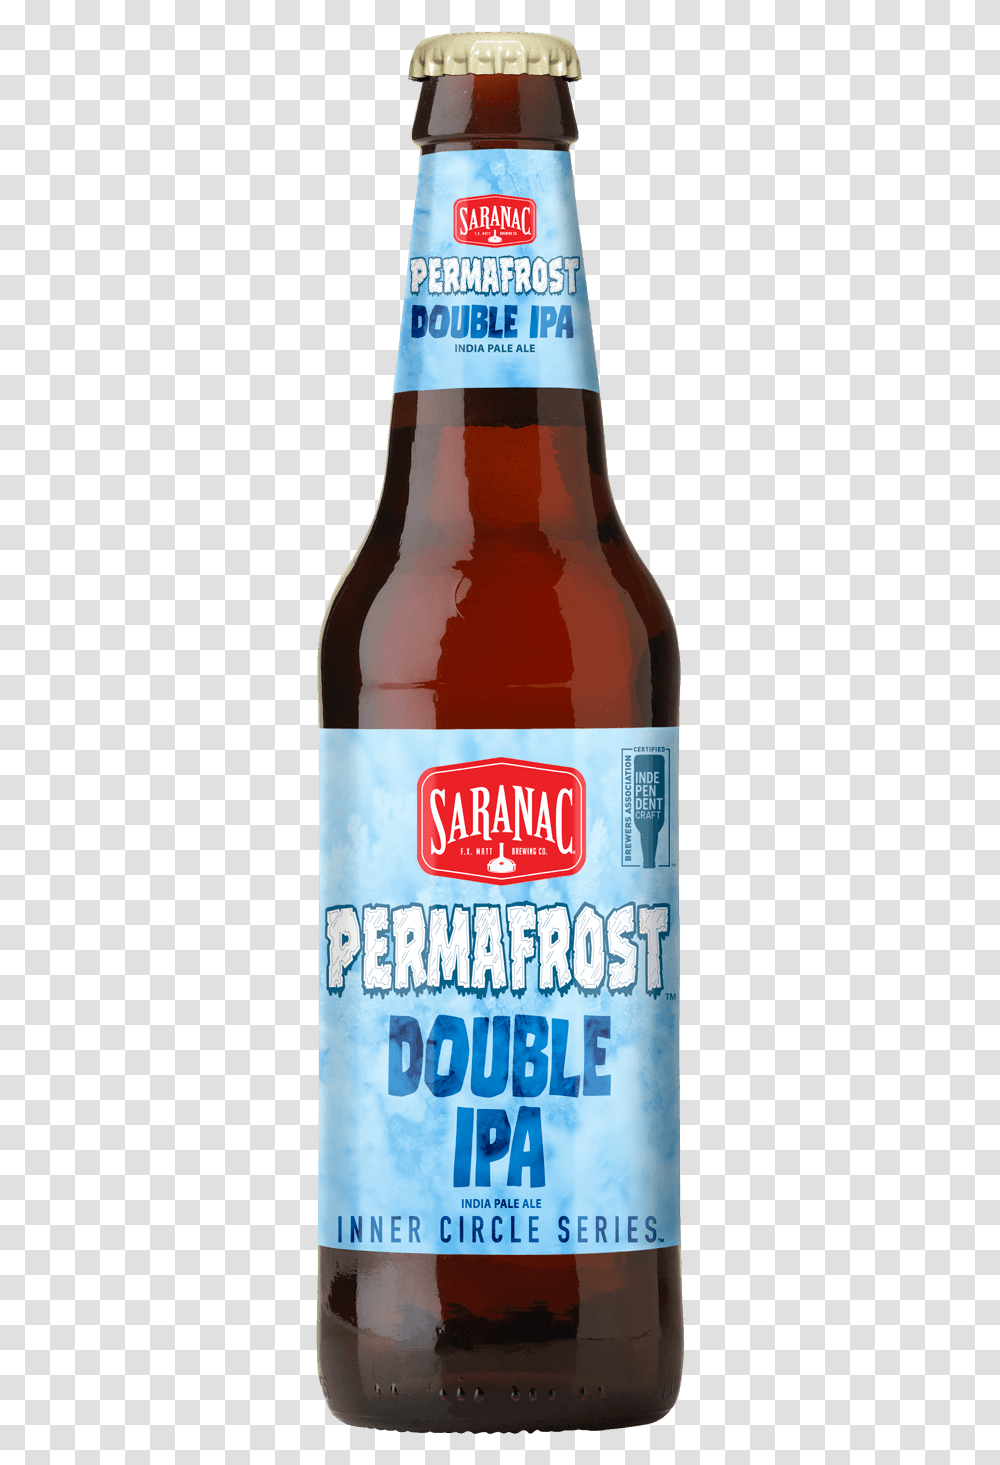 Saranac Permafrost Ipa Bottle Glass Bottle, Beer, Alcohol, Beverage, Drink Transparent Png